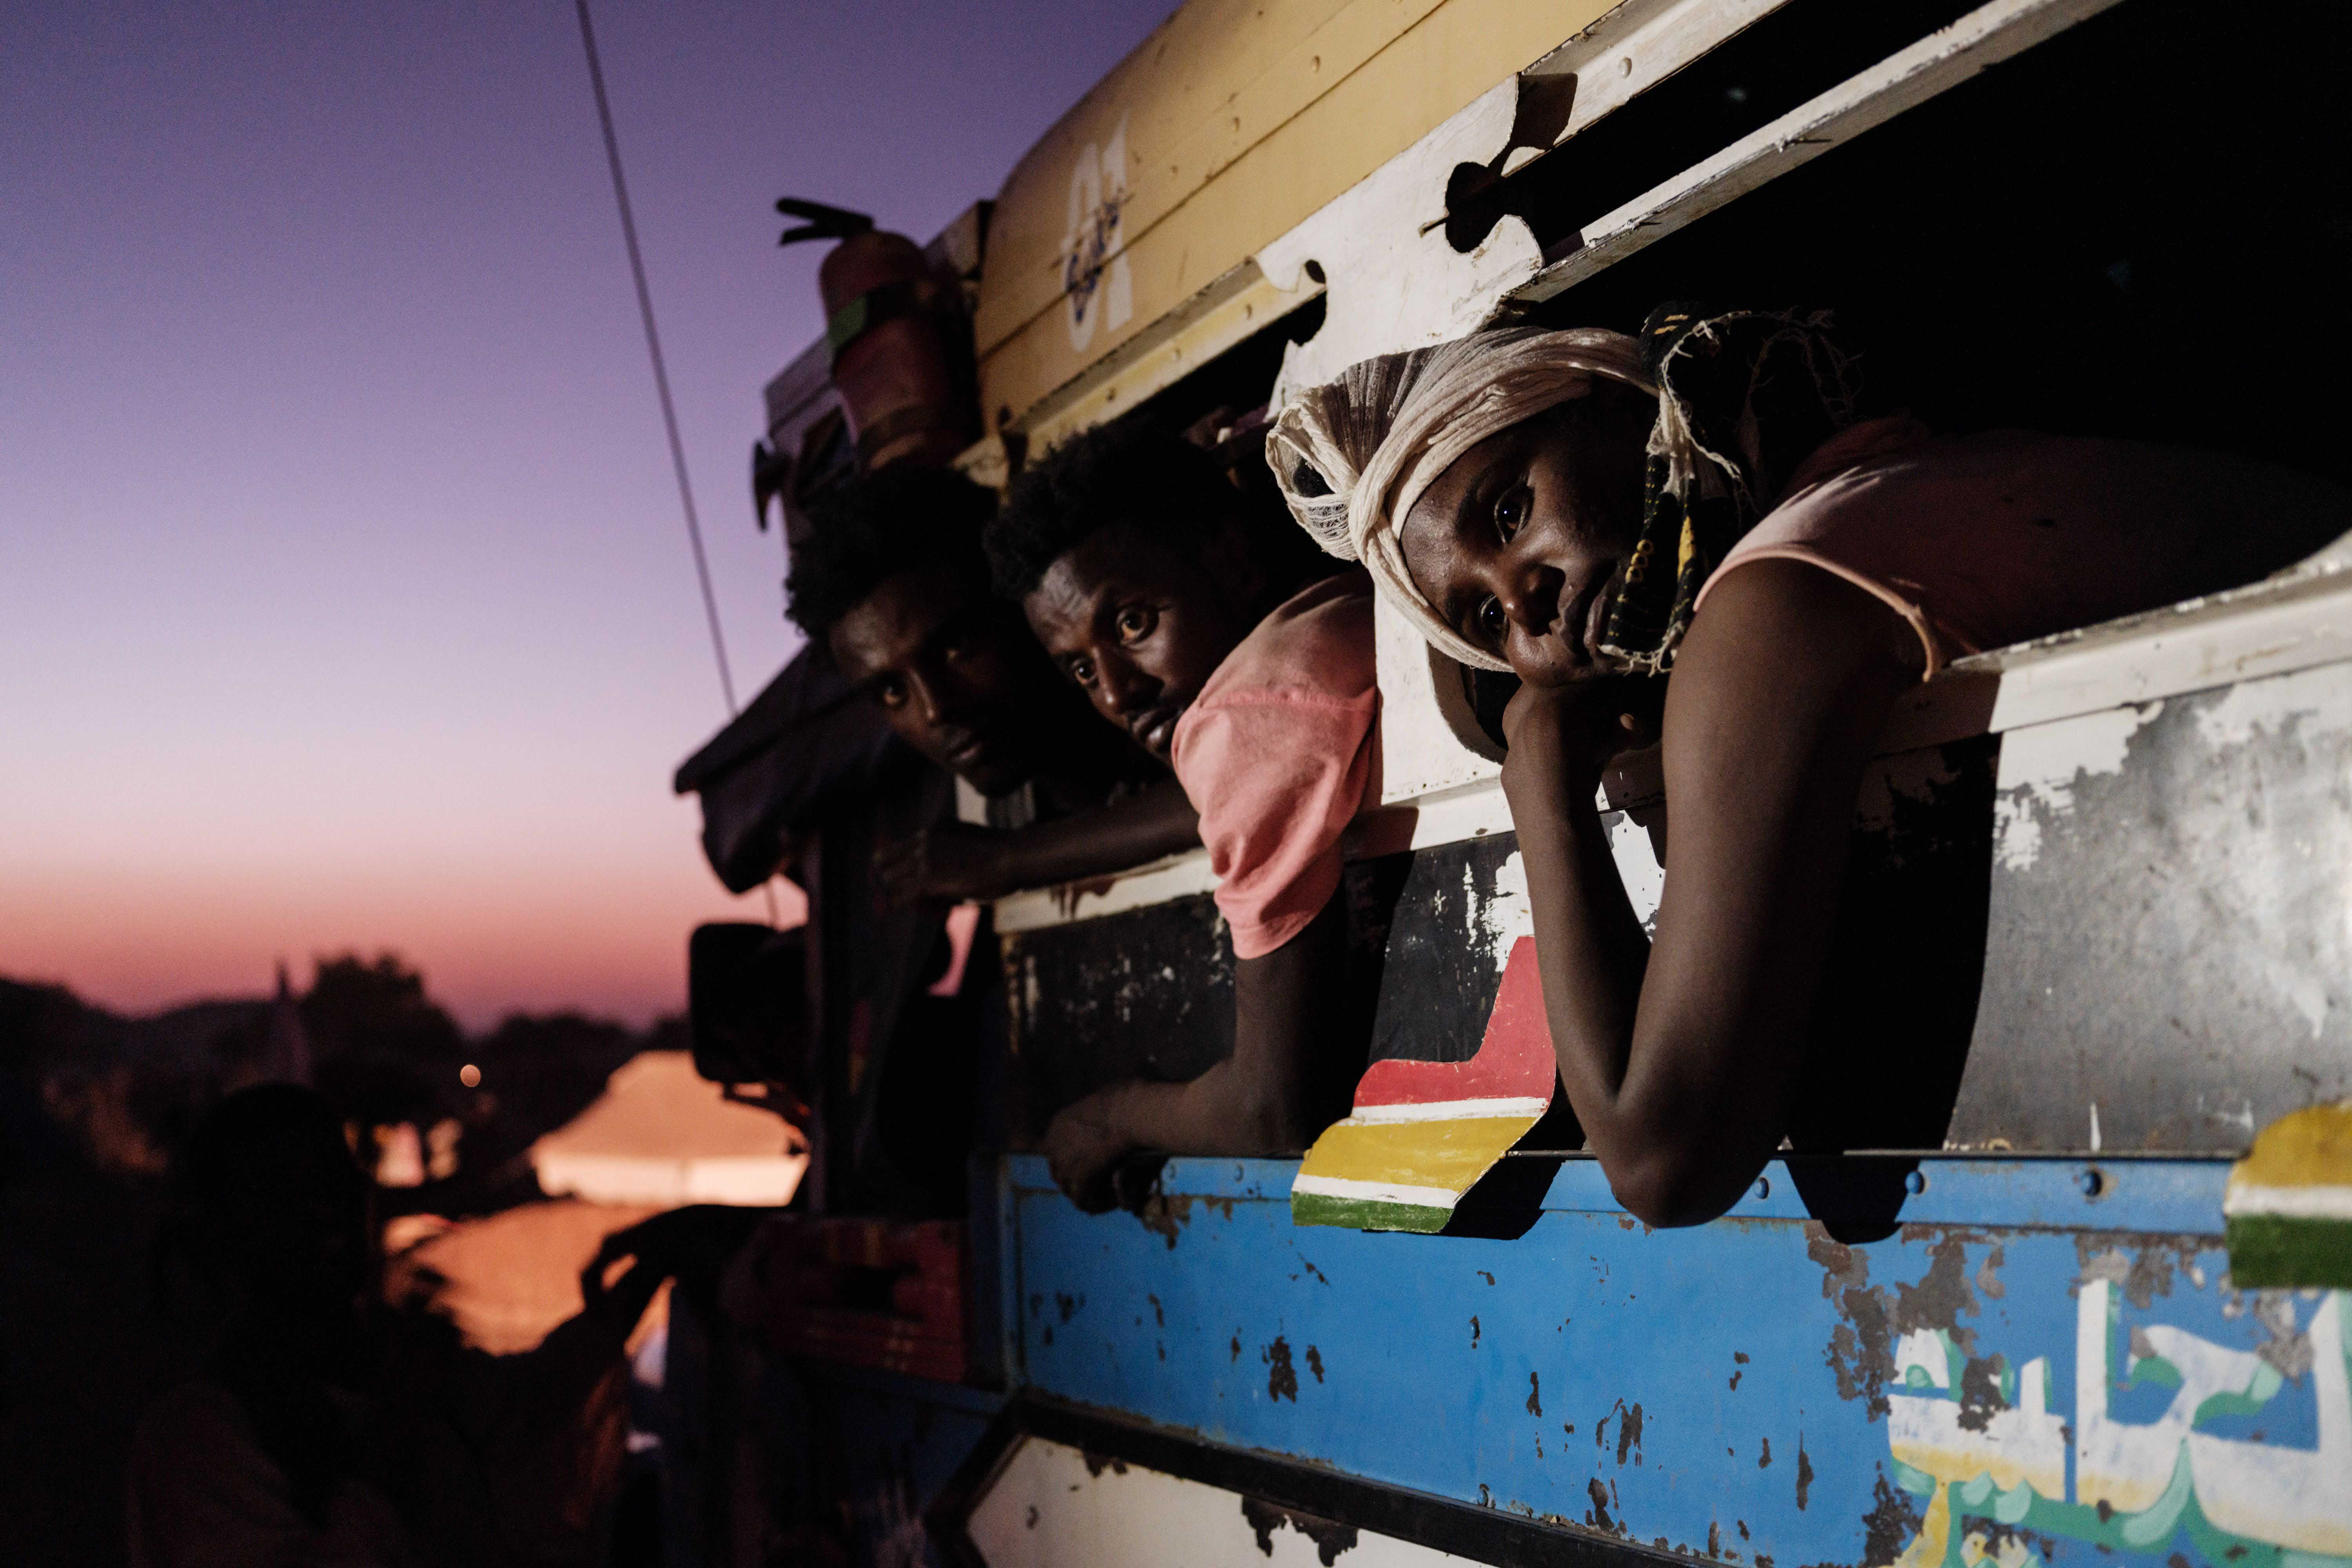 لاجئون أثيوبيون هربوا من نزاع تيغراي في في إثيوبيا يصلون بالحافلات إلى مخيم أم راكوبة للاجئين، غربي السودان، في 11 ديسمبر/كانون الأول 2020.